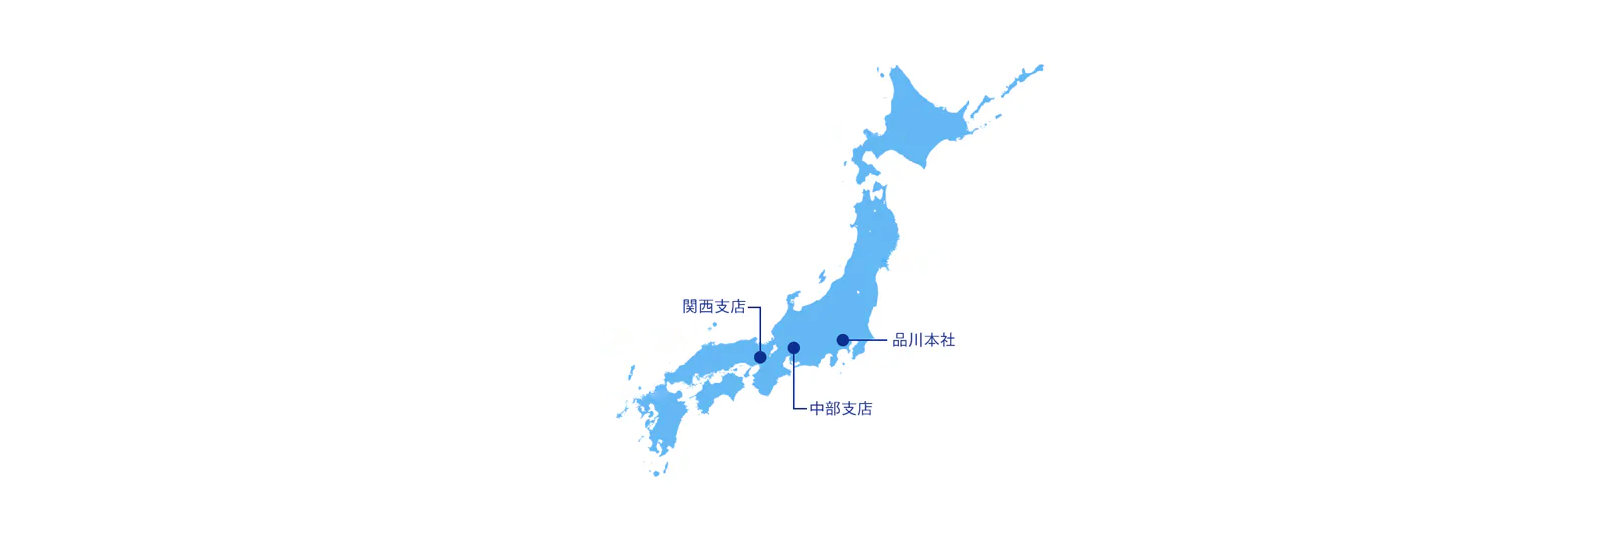 マイクロソフト品川本社、中部支社、関西支社を示す日本地図